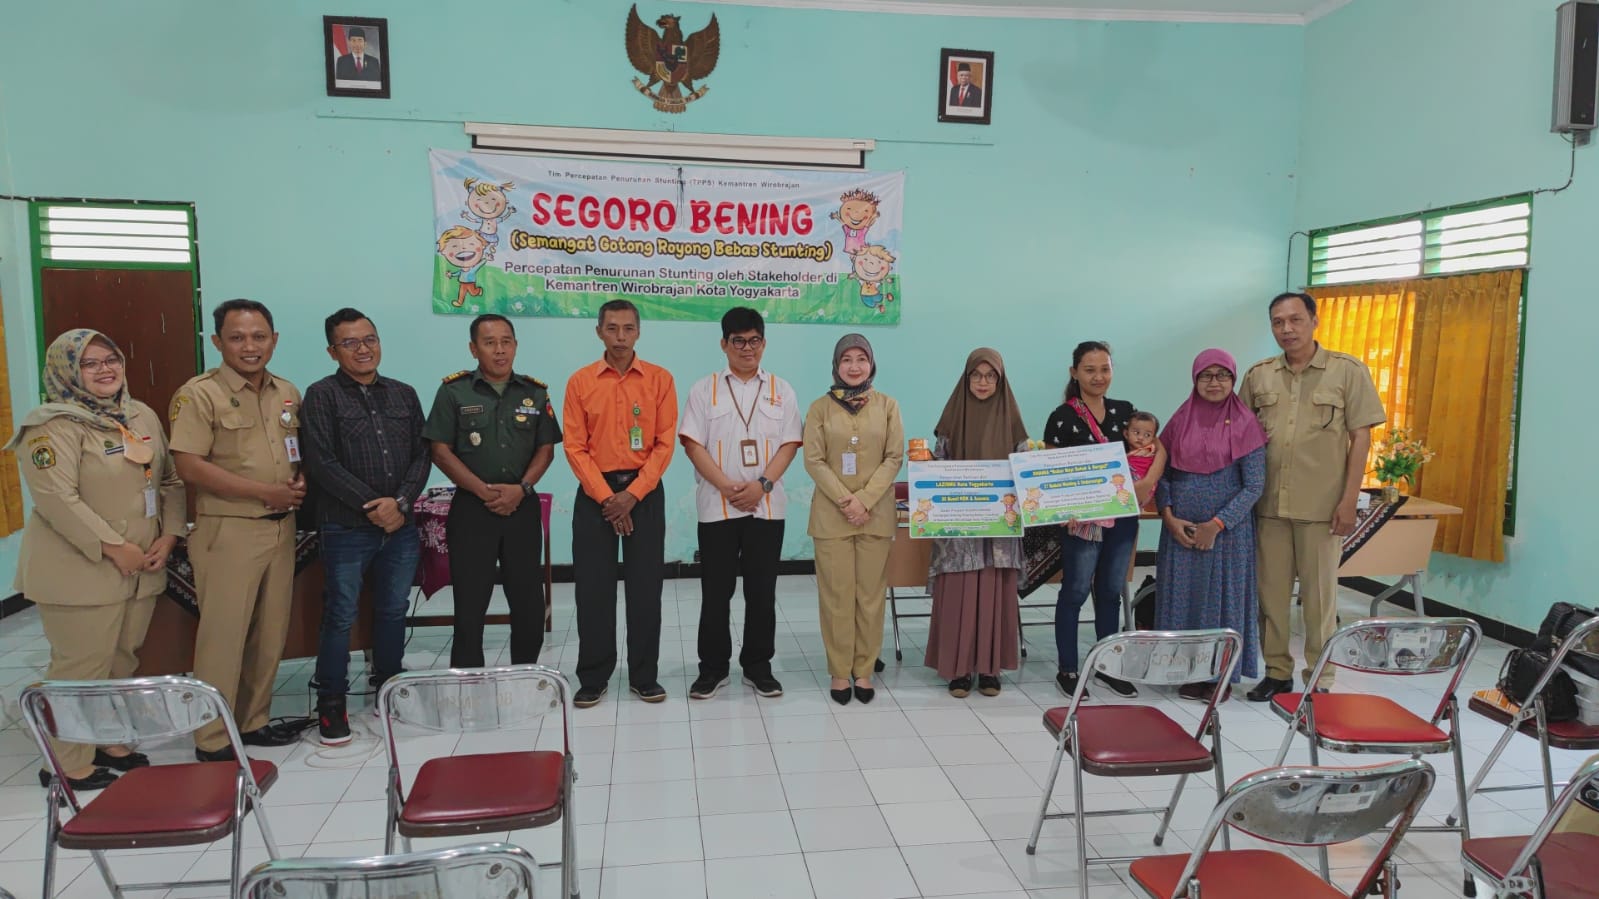 DHANIA Bubur Sehat Bergizi dan LAZISMU Kota Yogyakarta Peduli Stunting di Kemantren Wirobrajan Kota Yogyakarta